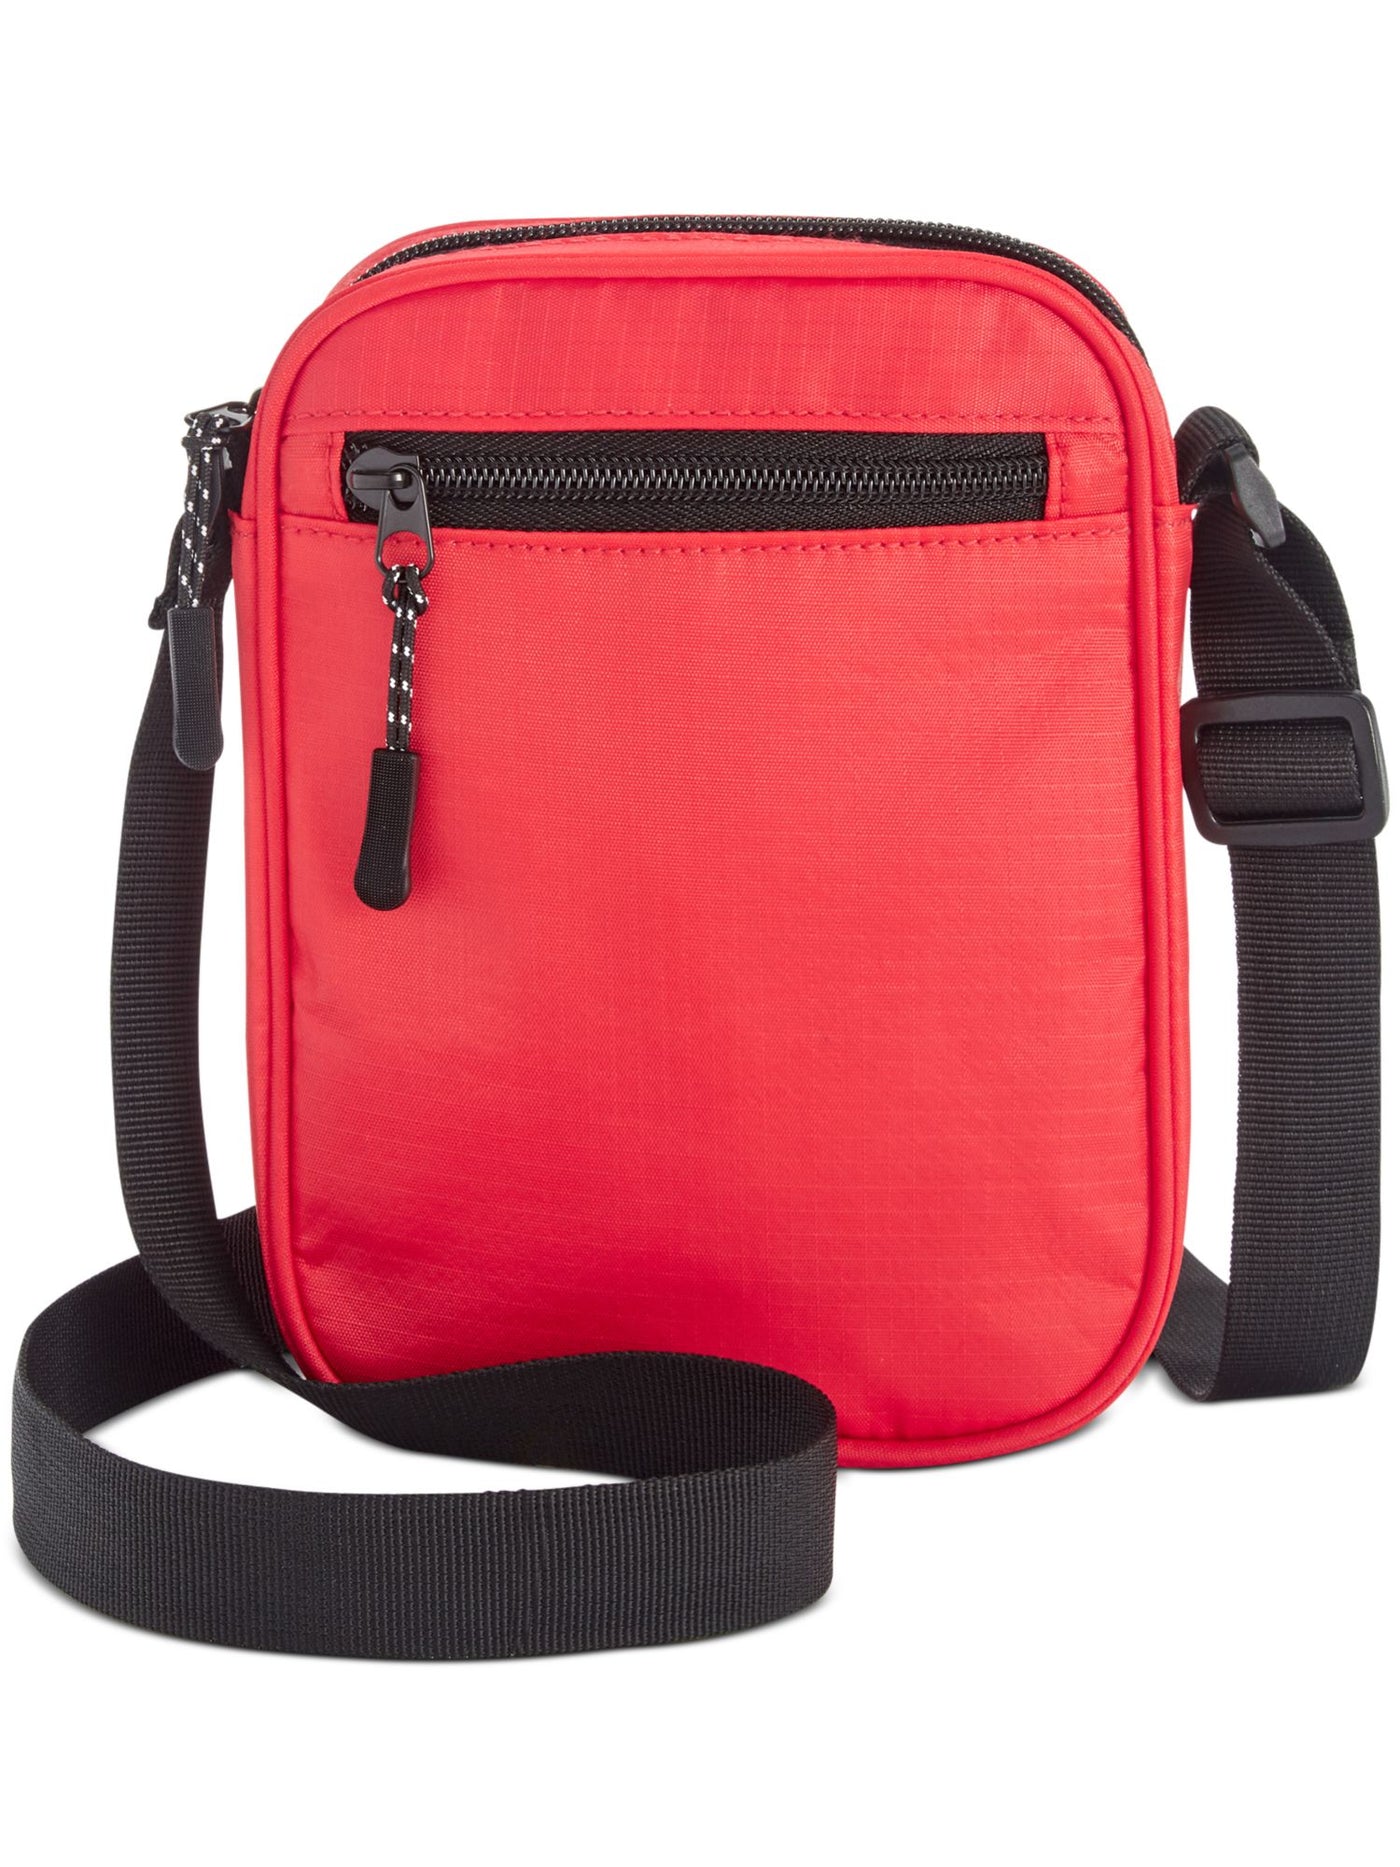 Bespoke Women's Red Nylon Check Print Adjustable Strap Messenger Bag